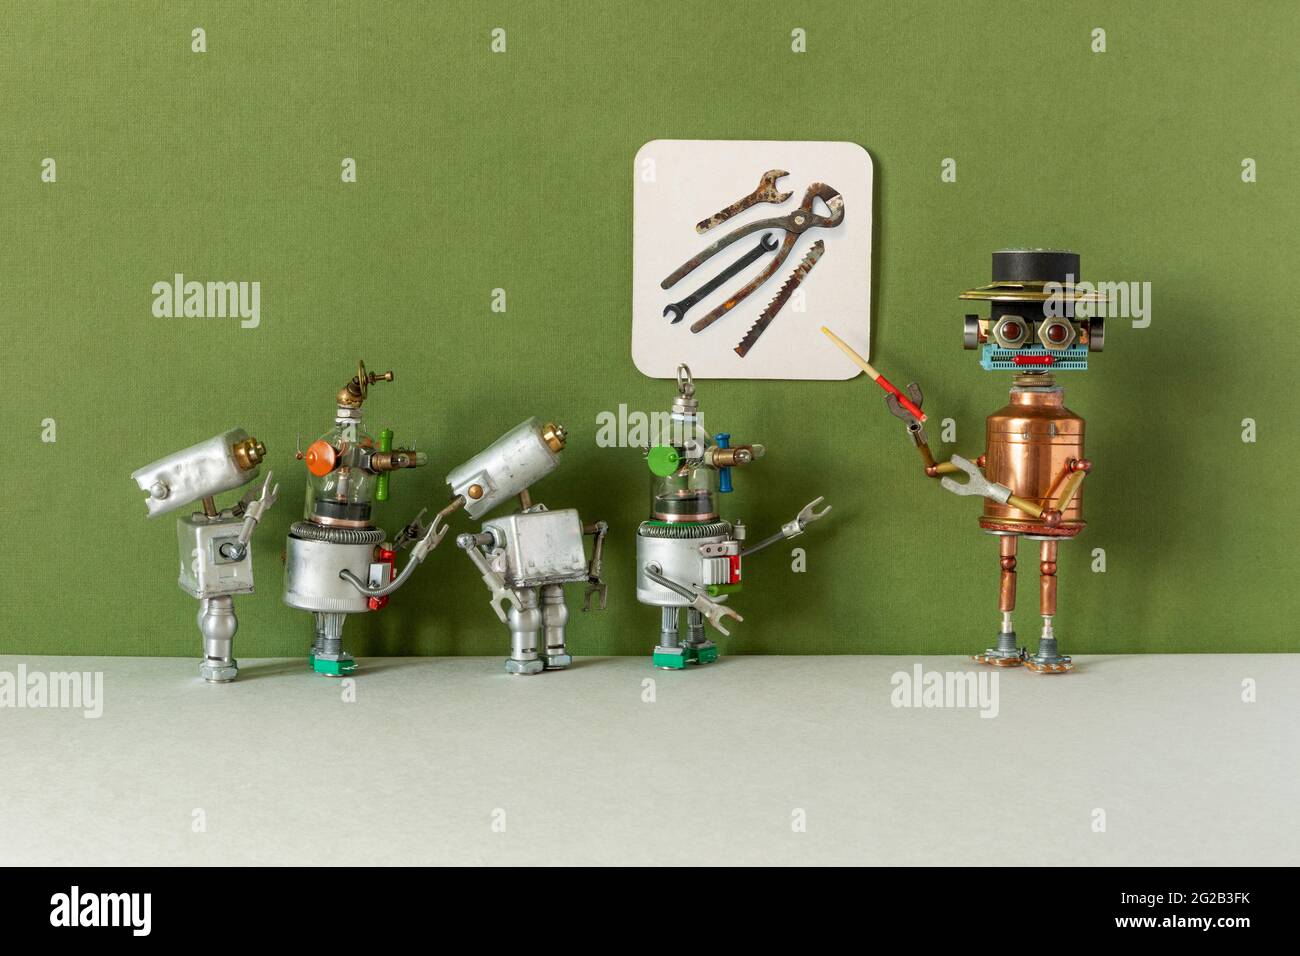 Una guía robótica explica a los jóvenes visitantes de la exposición la  historia de las herramientas mecánicas. Los estudiantes de robots estudian  una vieja fotografía en el verde Fotografía de stock -